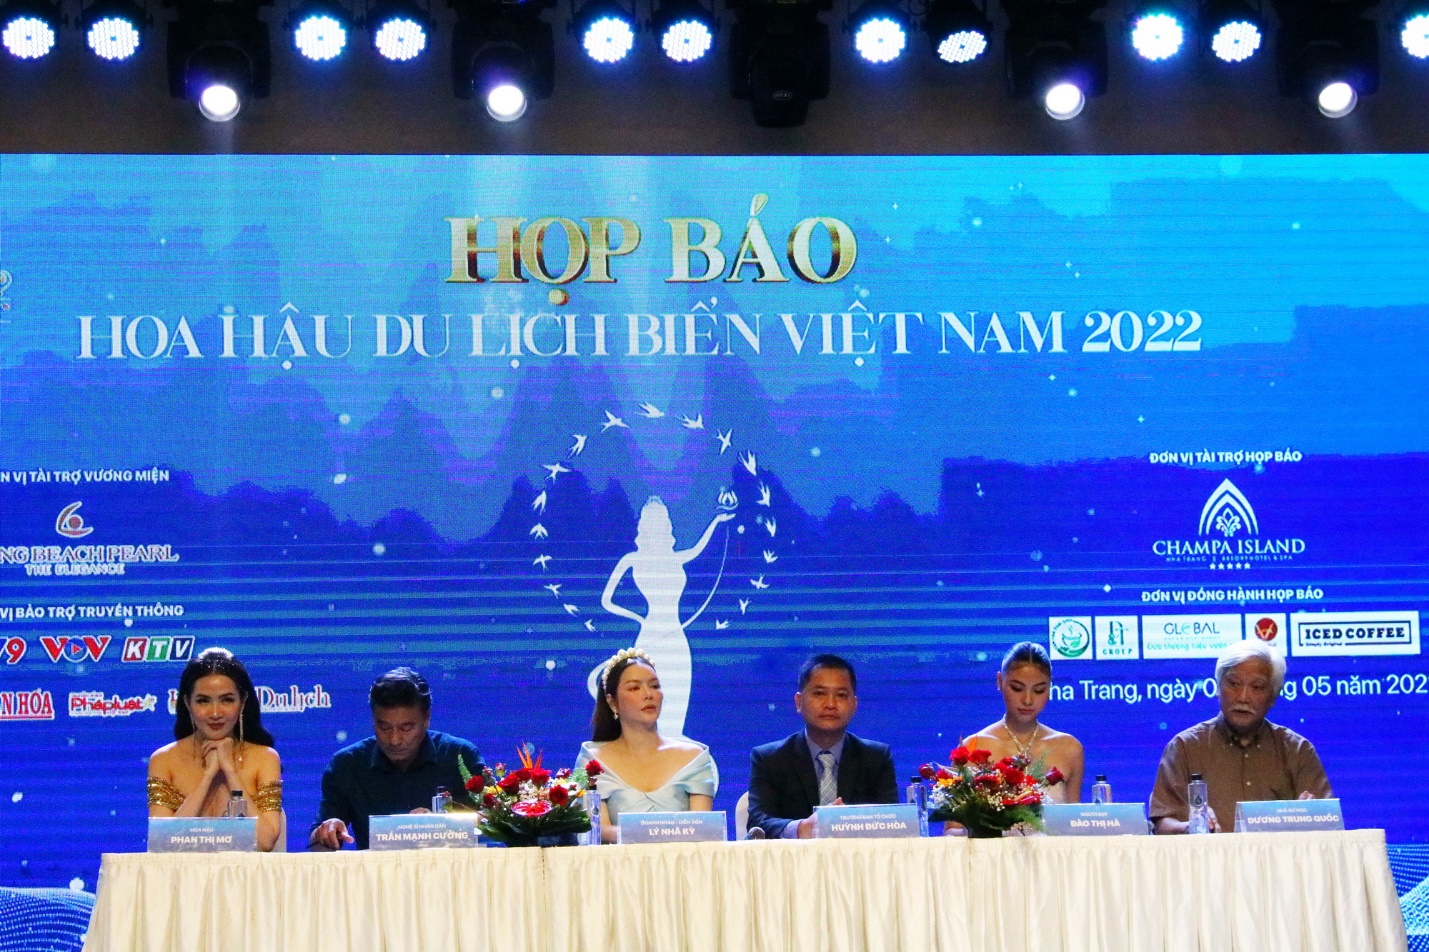 Hoa hậu Du lịch Biển Việt Nam sẽ nhận vương miện ngọc trai 1,8 tỷ đồng - 1